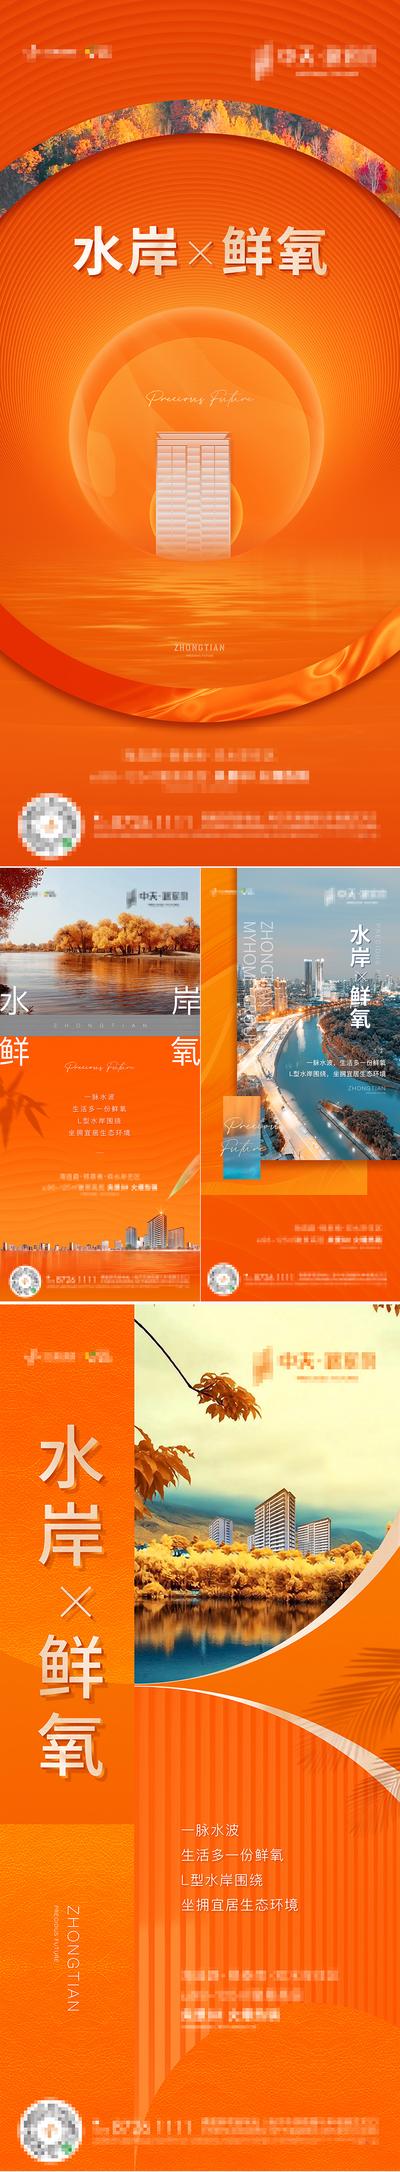 南门网 海报 房地产 价值点 系列 橙色 环境 公园 交通